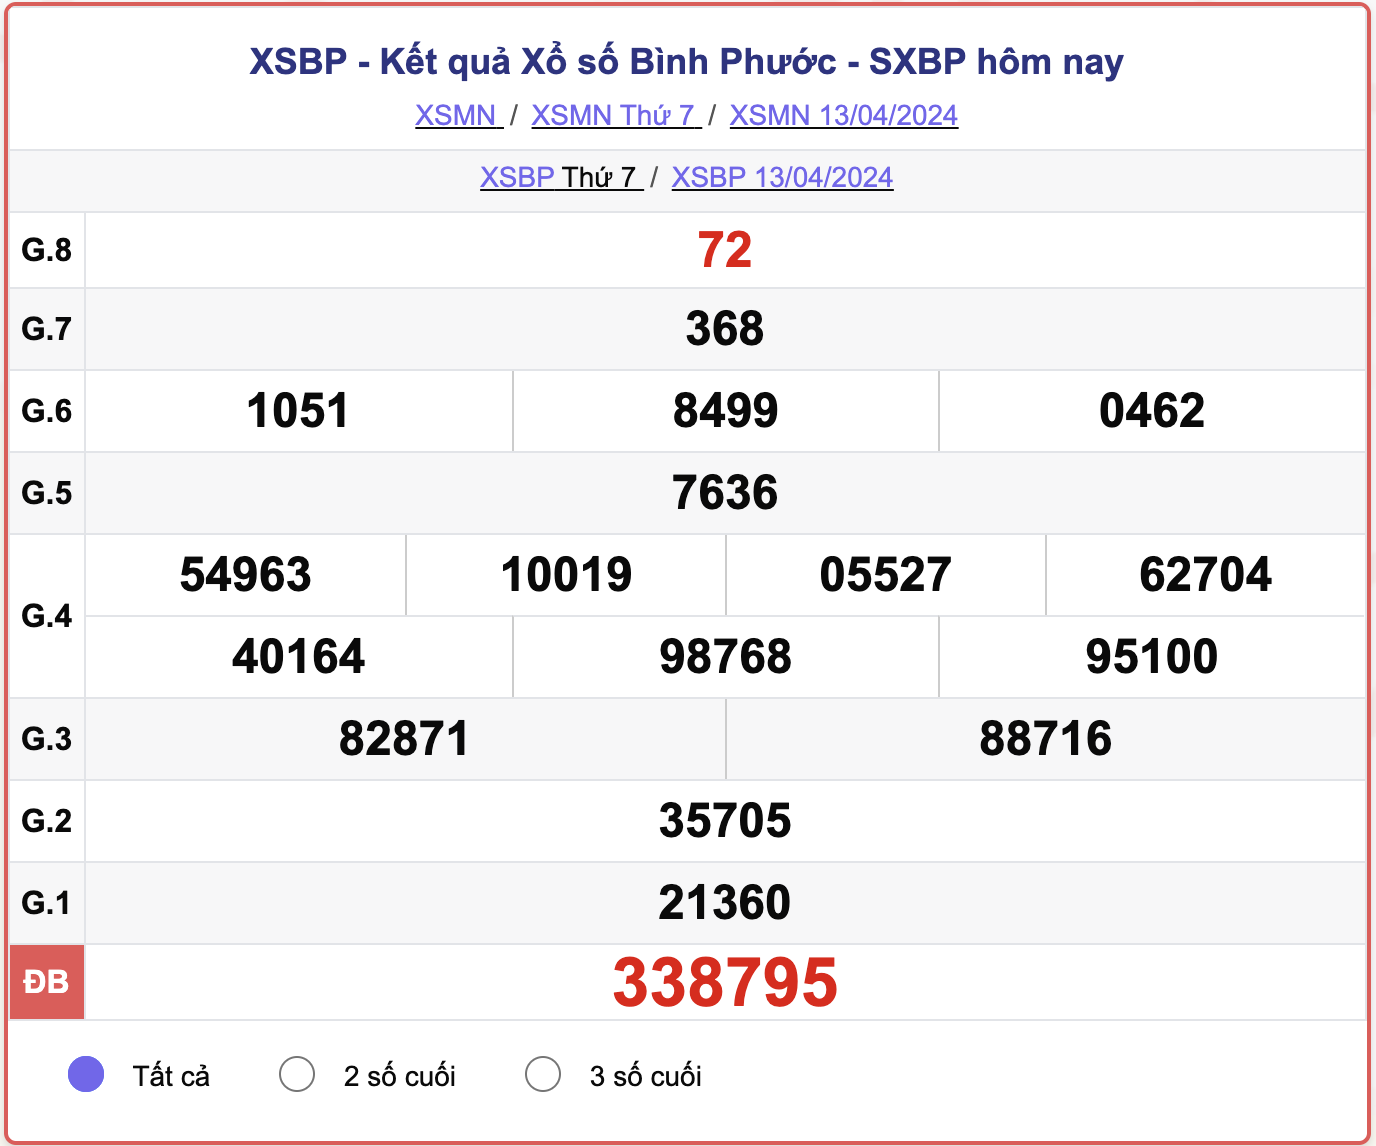 XSBP thứ 7, kết quả xổ số Bình Phước ngày 13/4/2024.